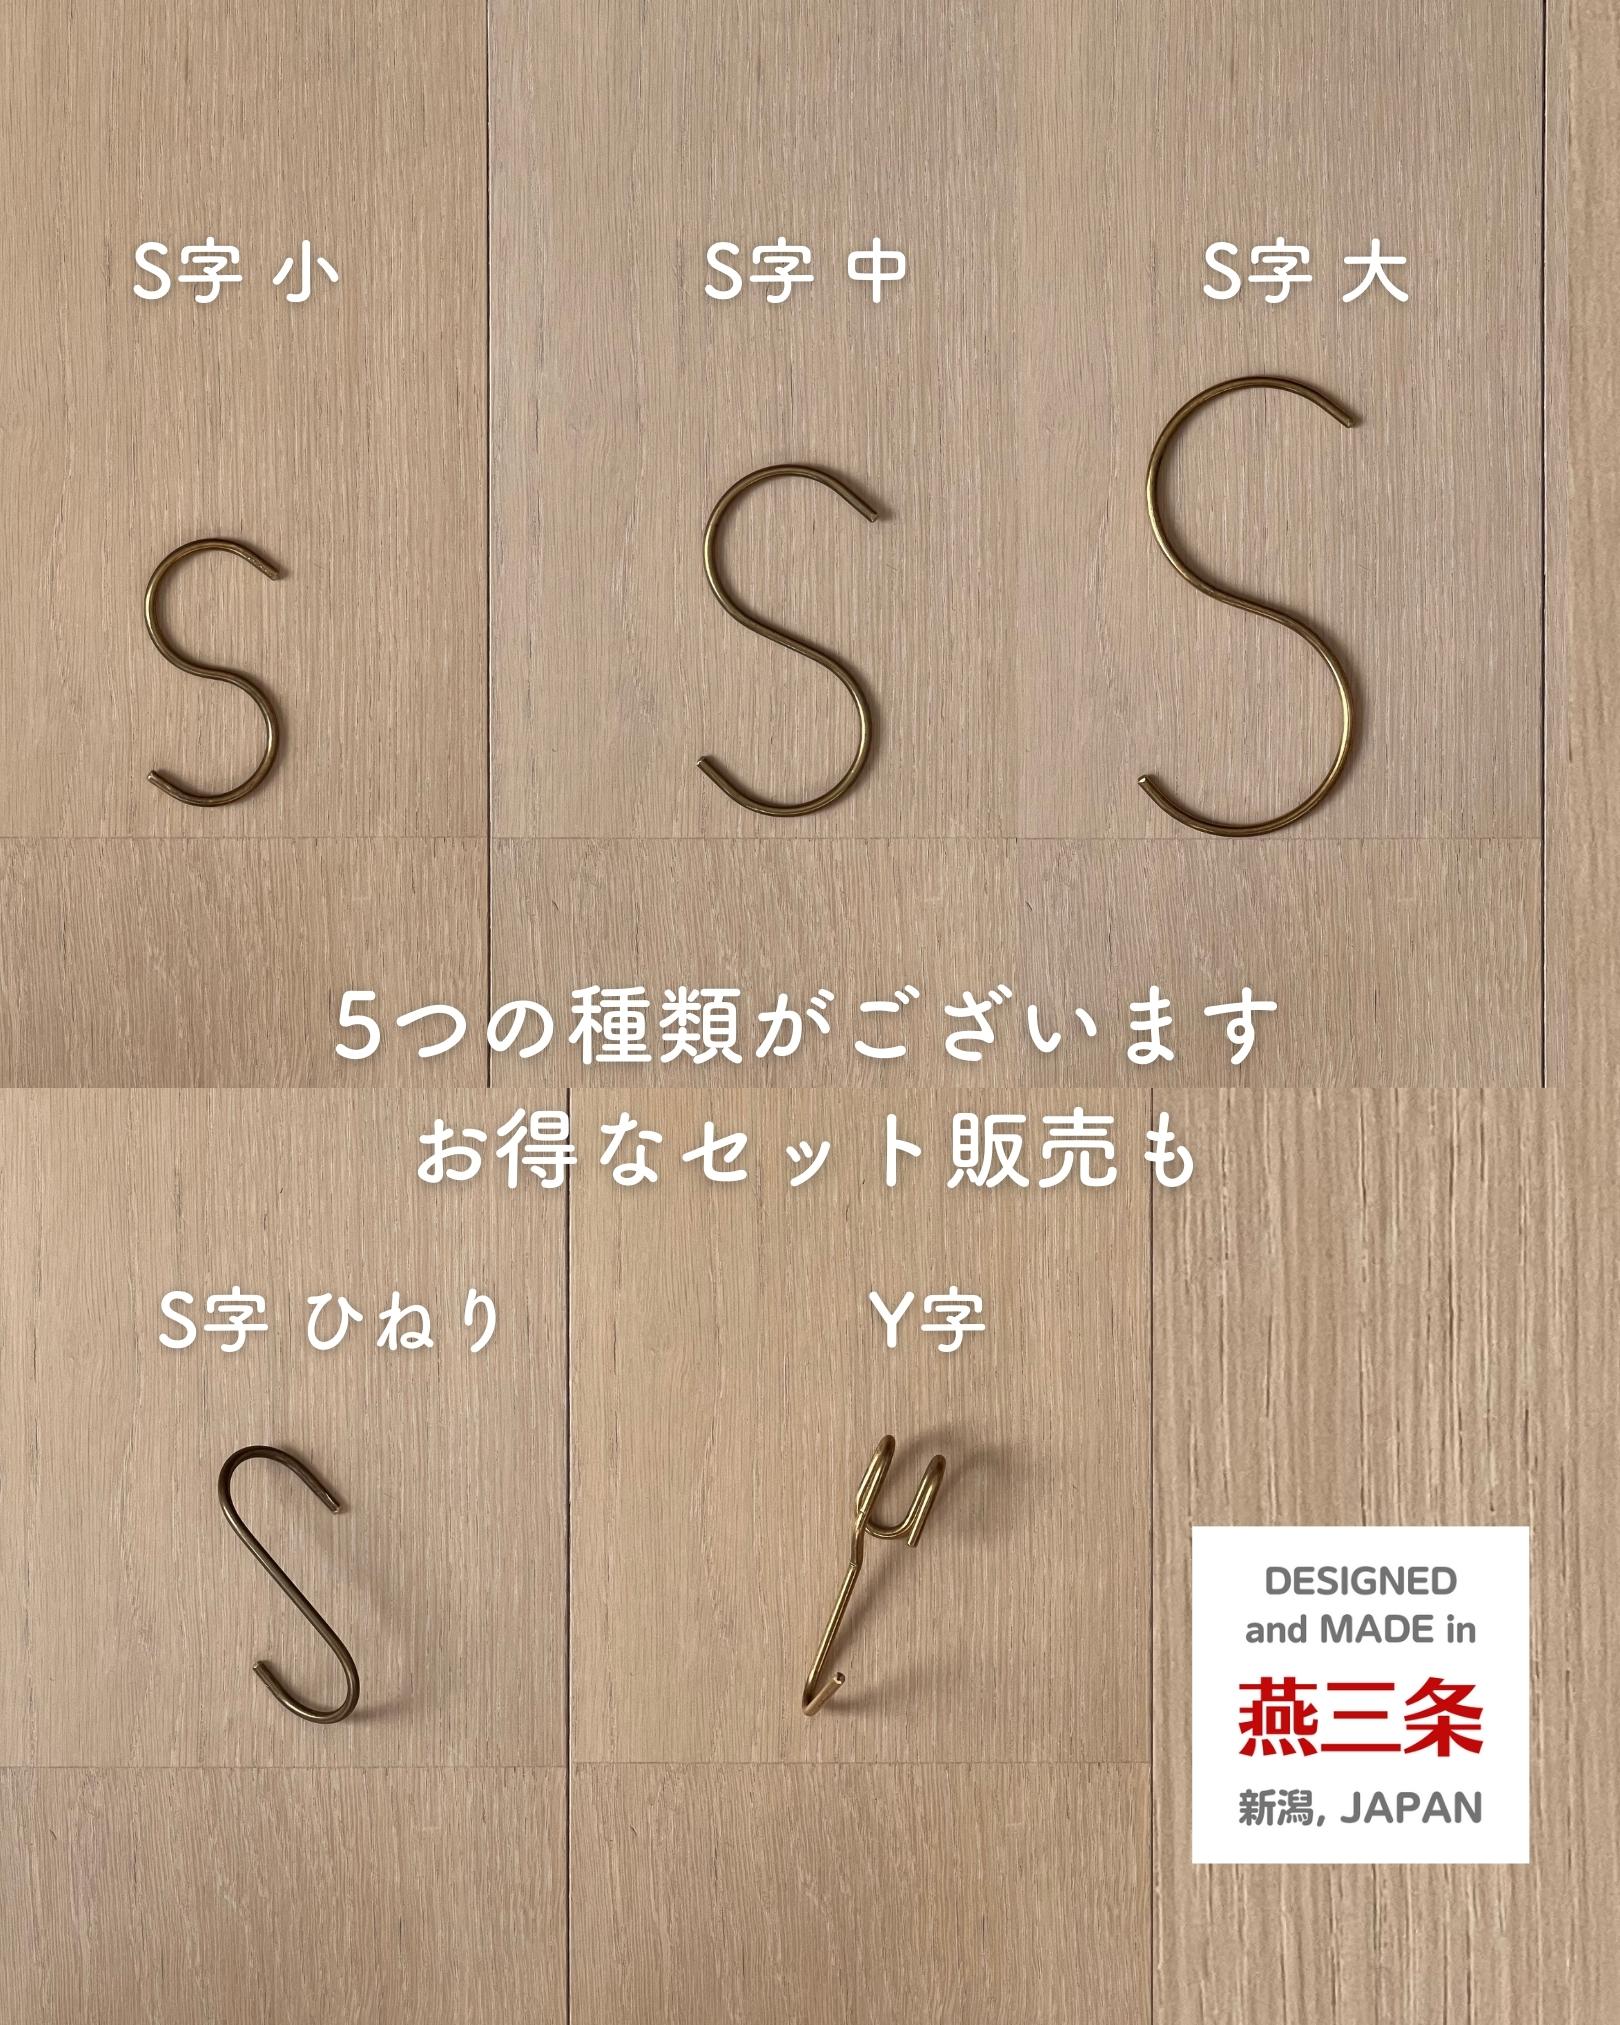 真鍮フック S ひねり 2個組 約3.5×7cm 日本製 燕三条 ビーワーススタイル ※メール便